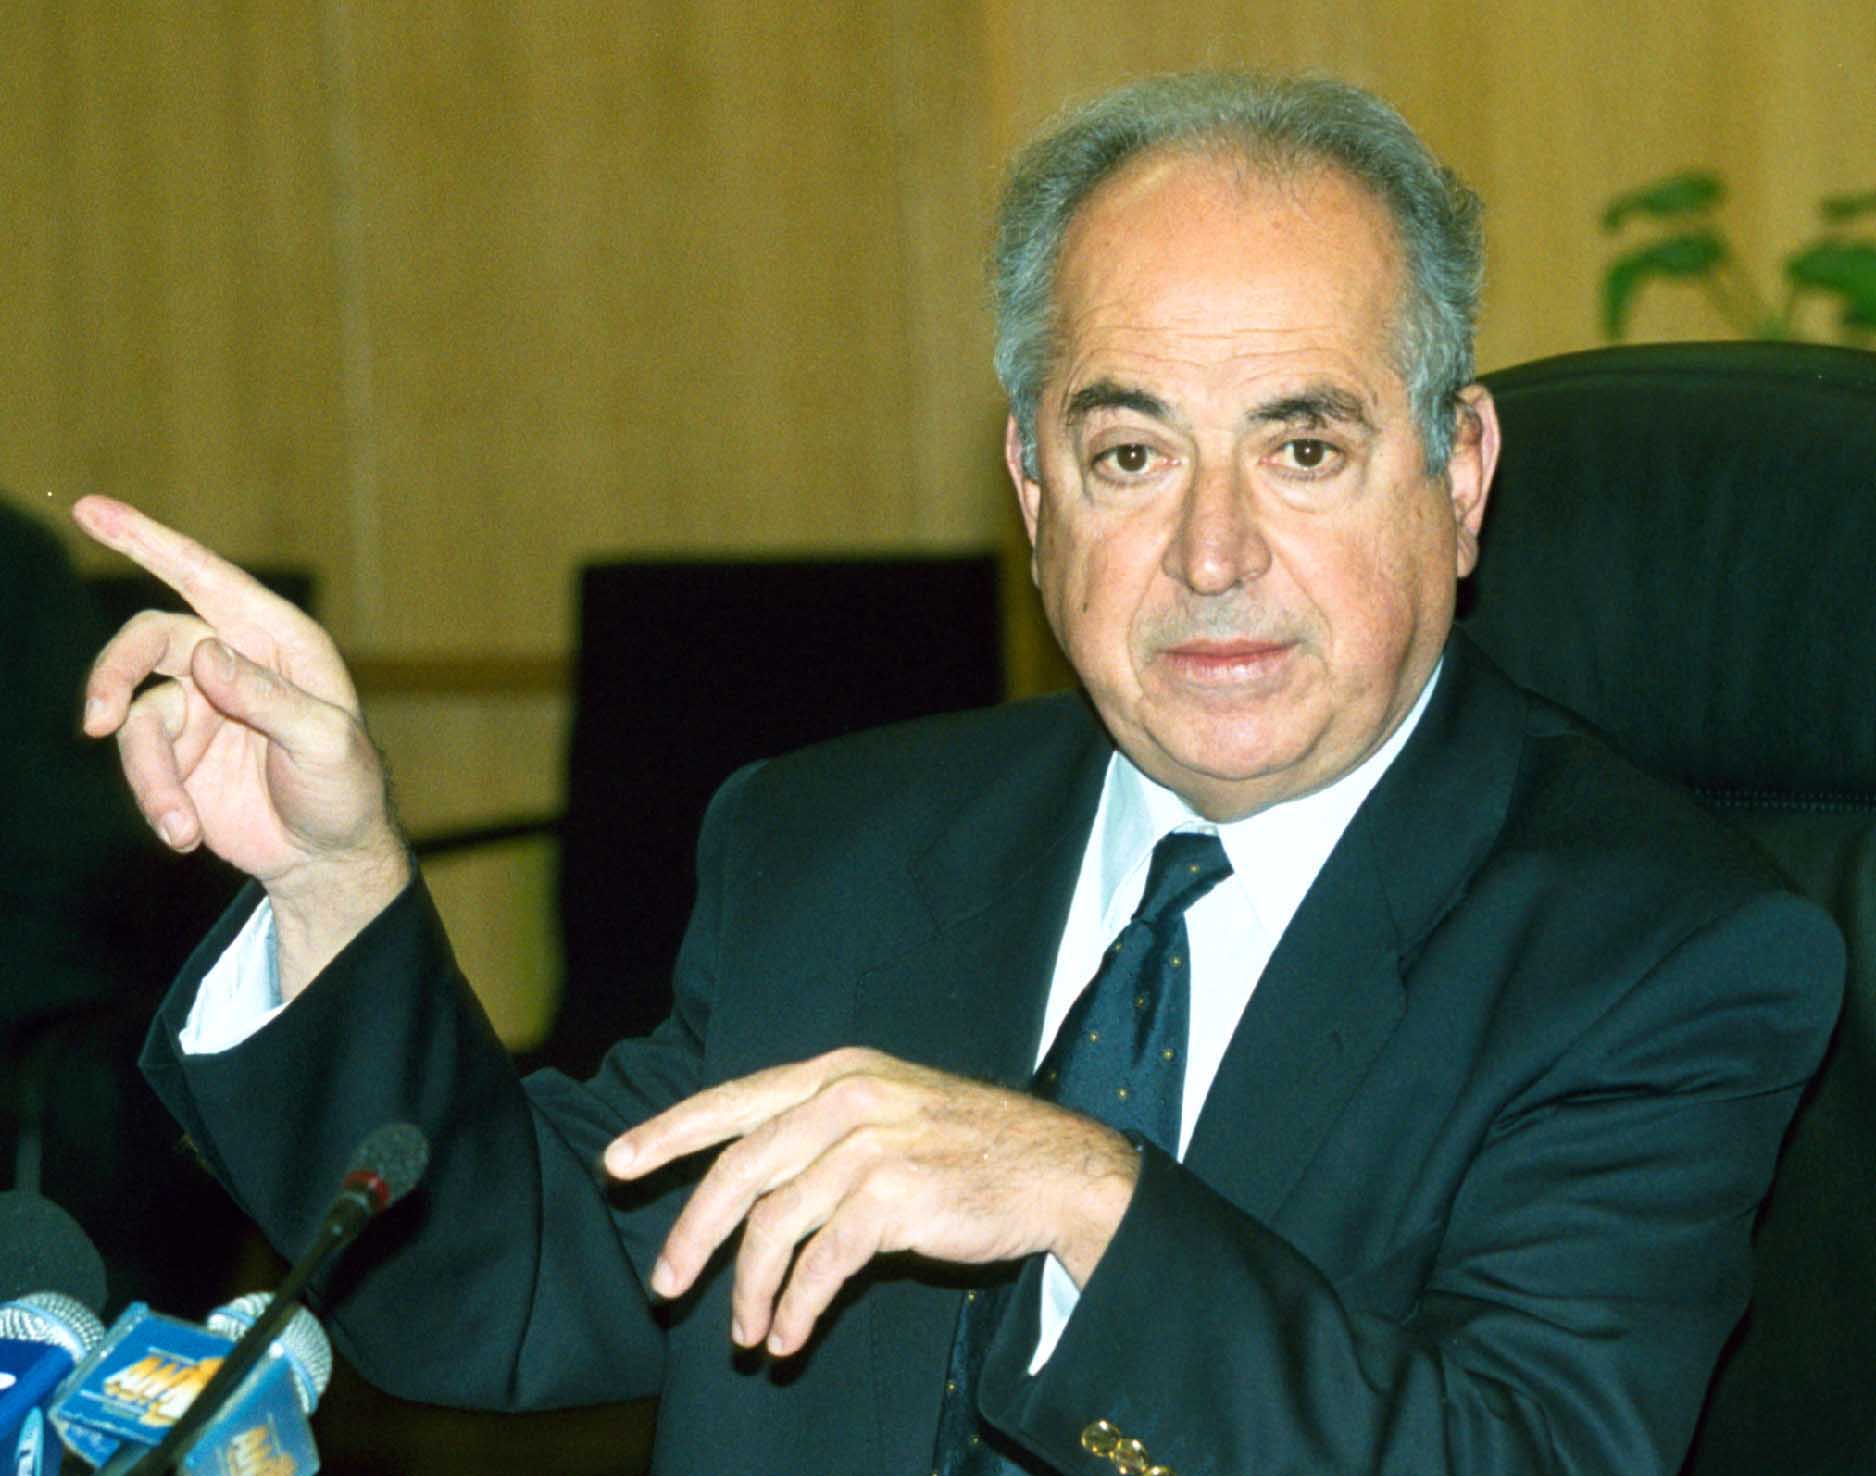 Πέθανε ο Δημήτρης Αποστολάκης, πρώην υφυπουργός και βουλευτής του ΠΑΣΟΚ